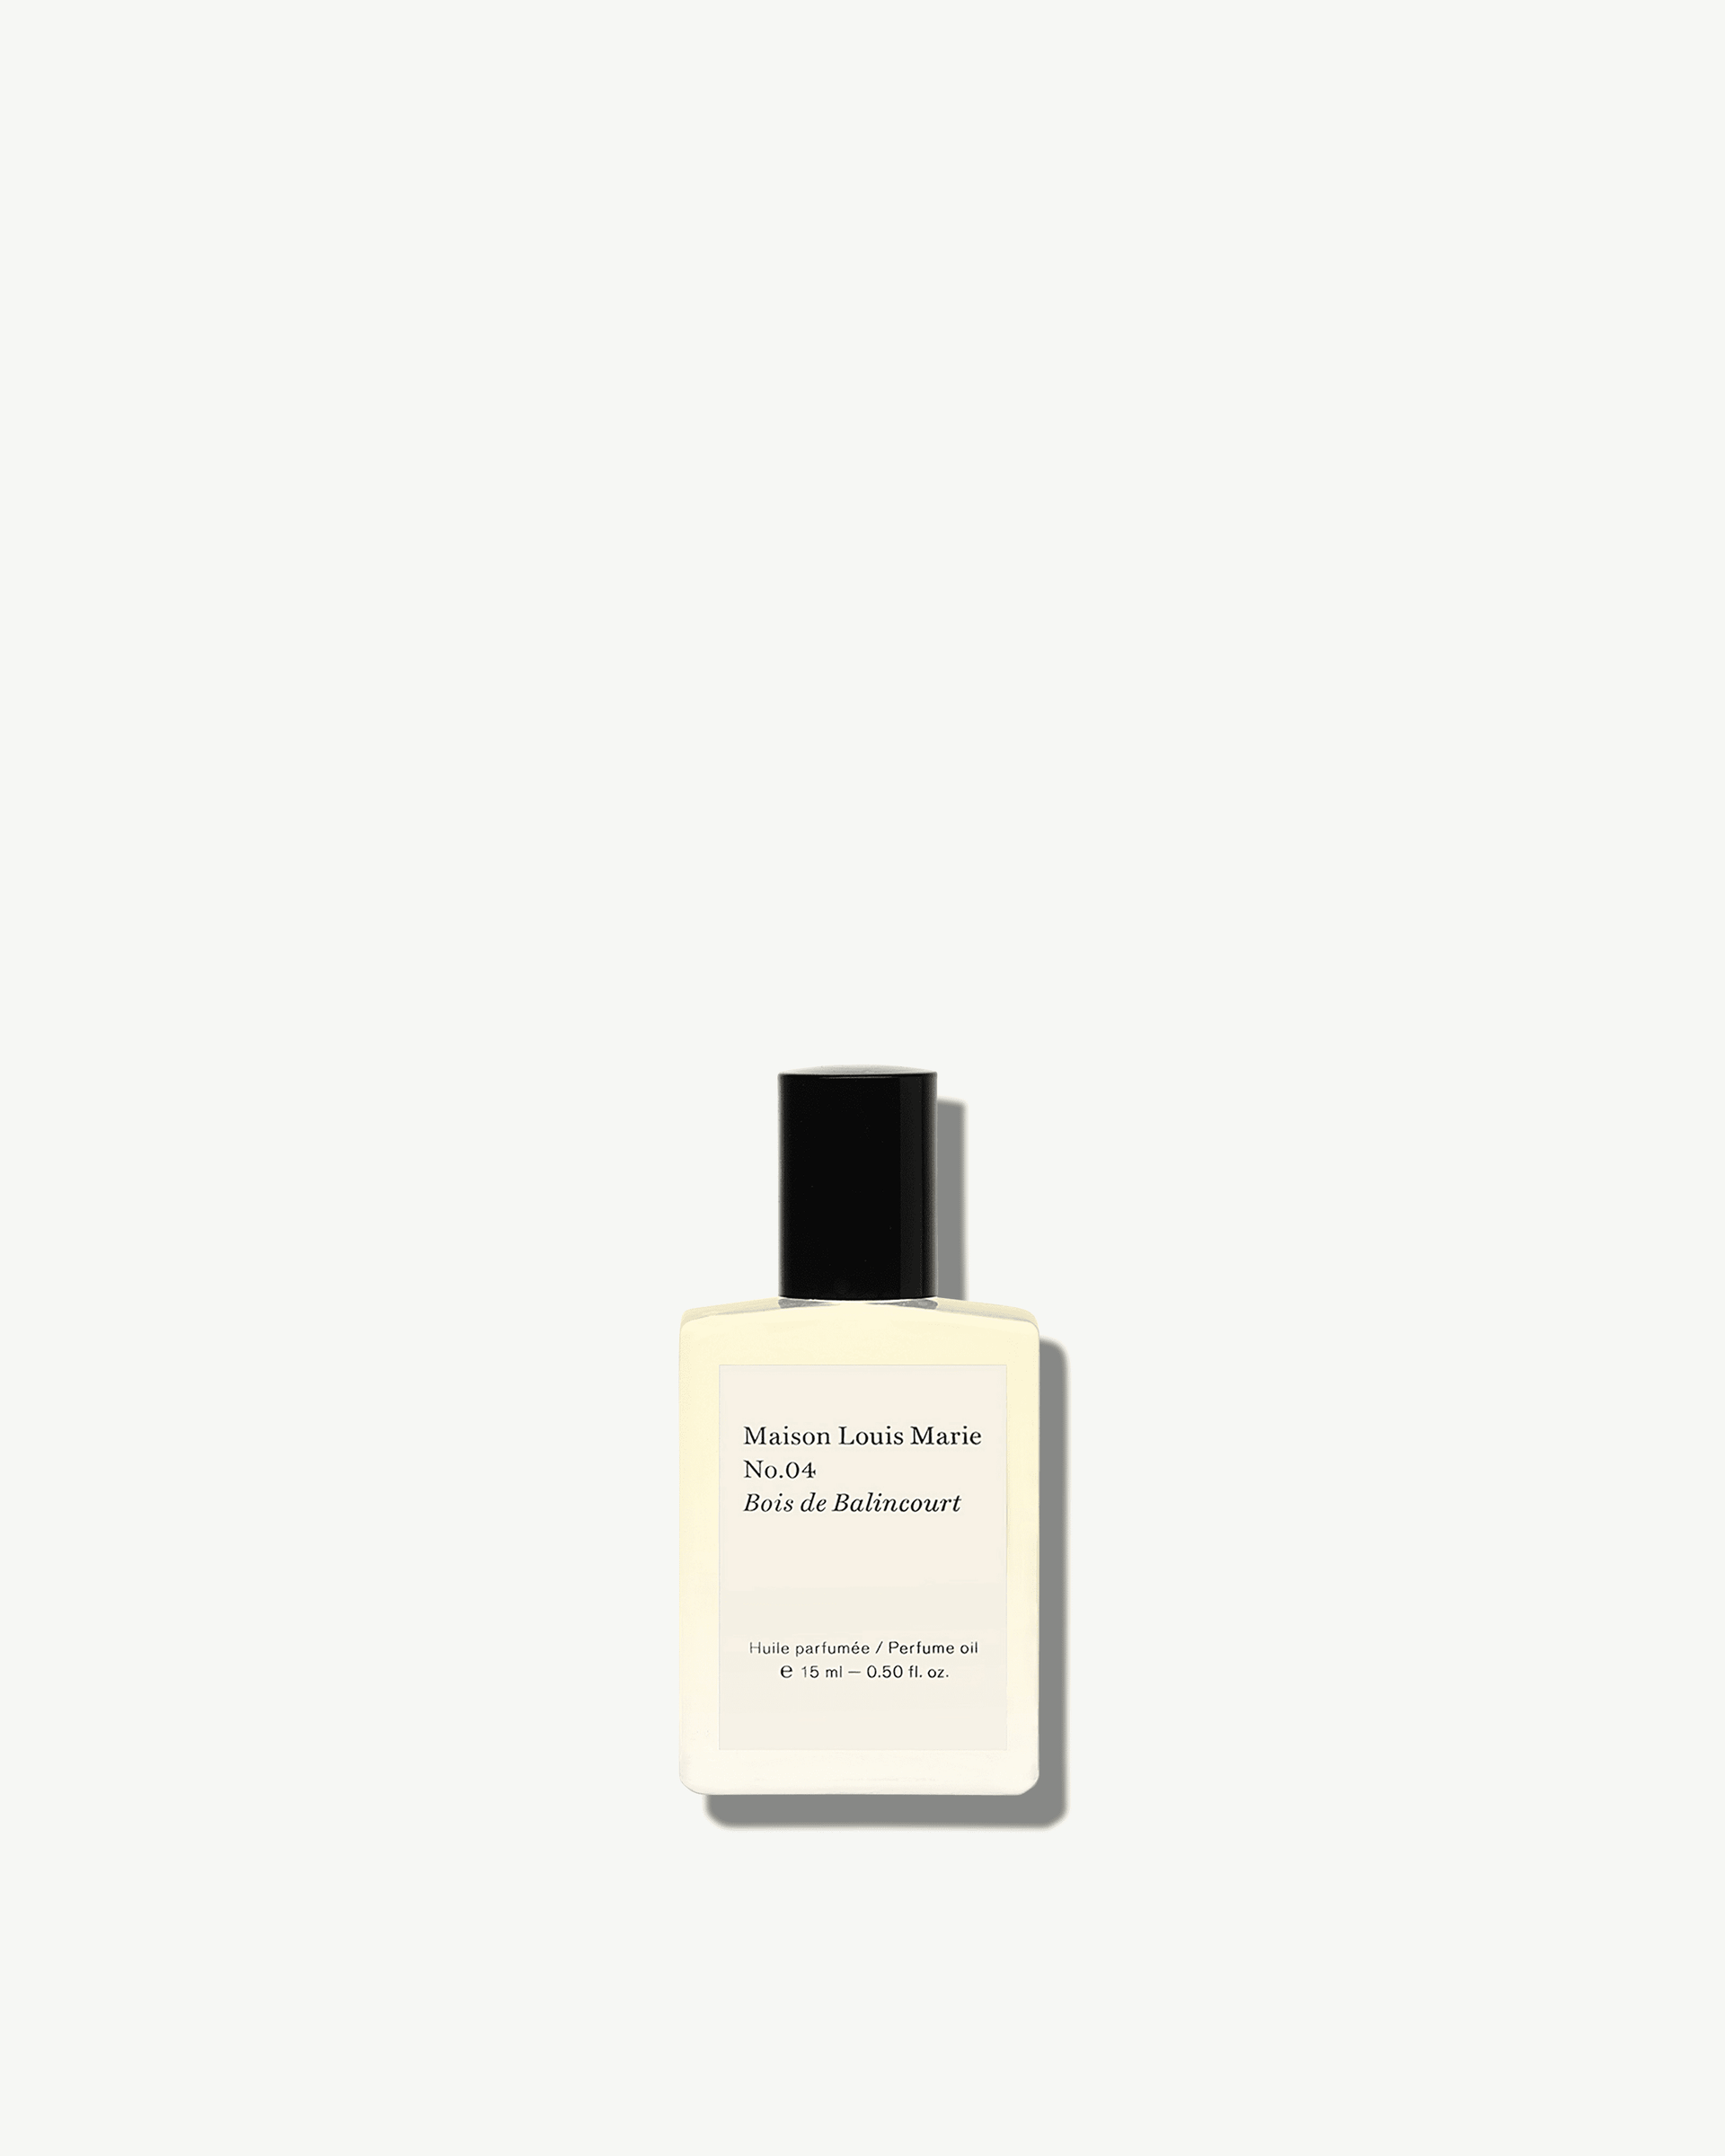 Sample Perfume Oil | Maison Louis Marie No.04 | Bois de Balincourt